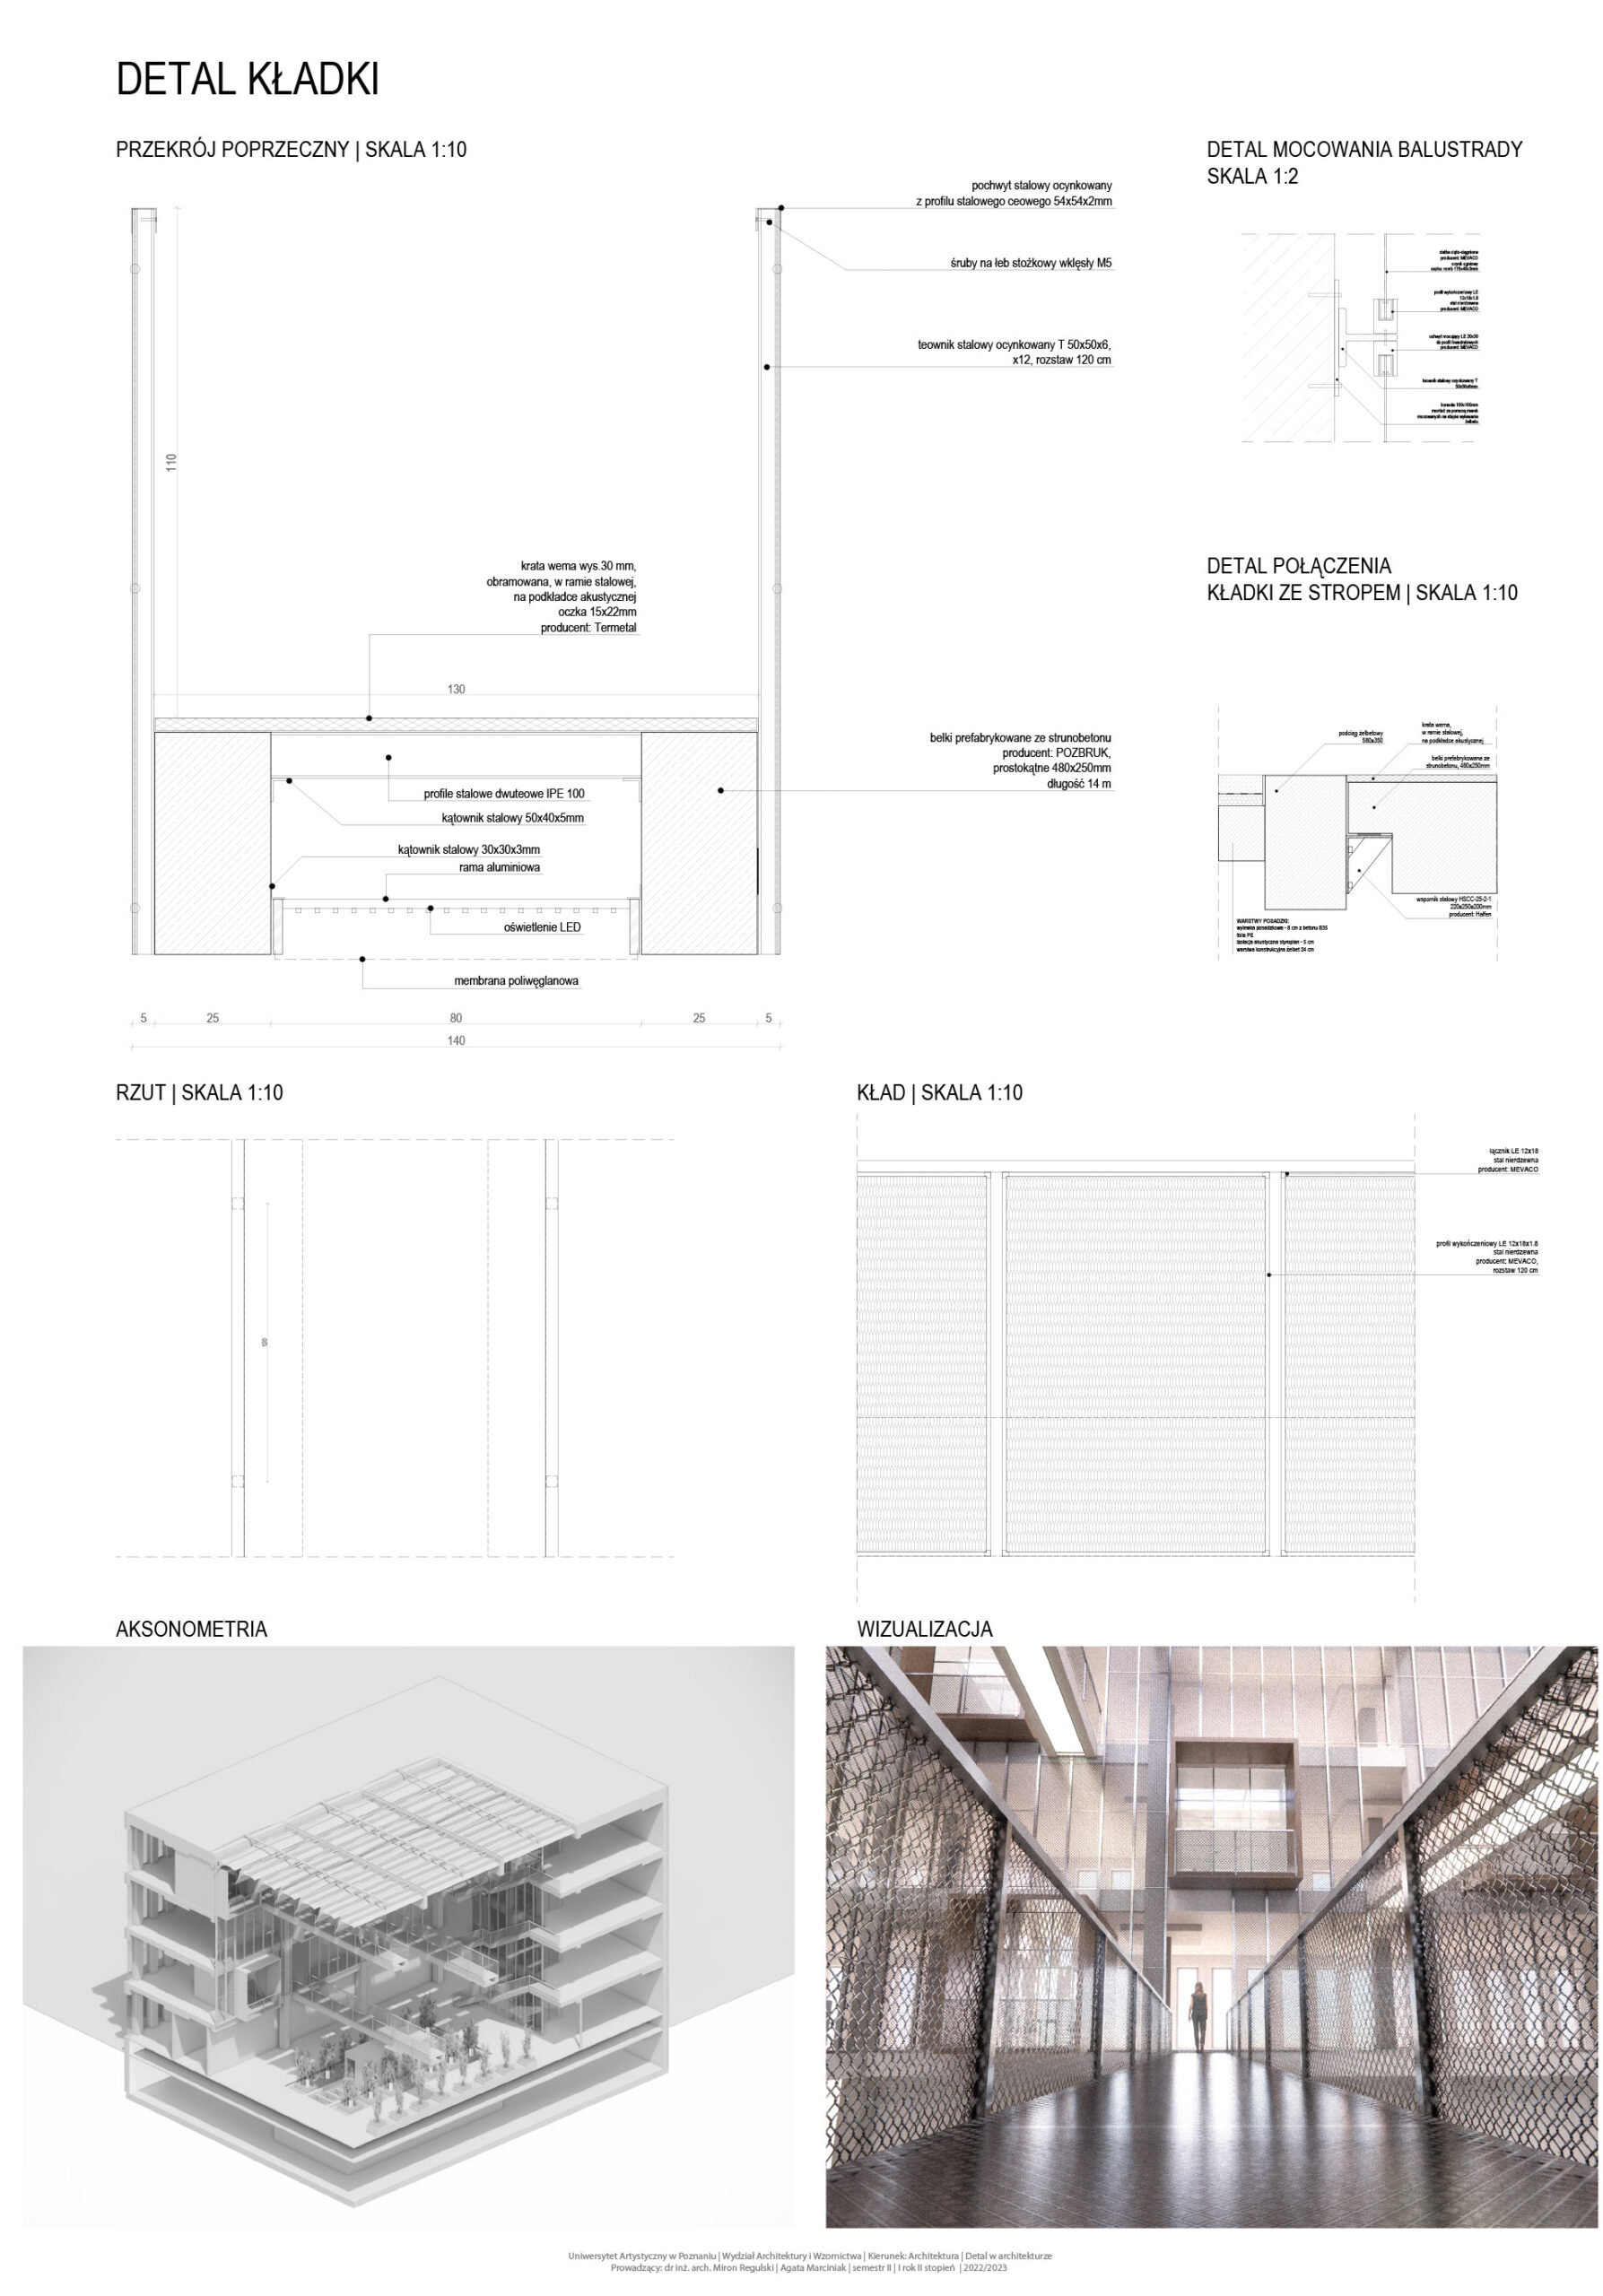 Dolna lewa część: wizualizacja aksonometryczna - przekrój budynku w miejscu patio.Dolna prawa część: wizualizacja projektowanego detalu w przestrzeni patio.Górna część:rysunki techniczne, schematy, opisy wyrobów budowlanych oraz rozwiązań technicznych.